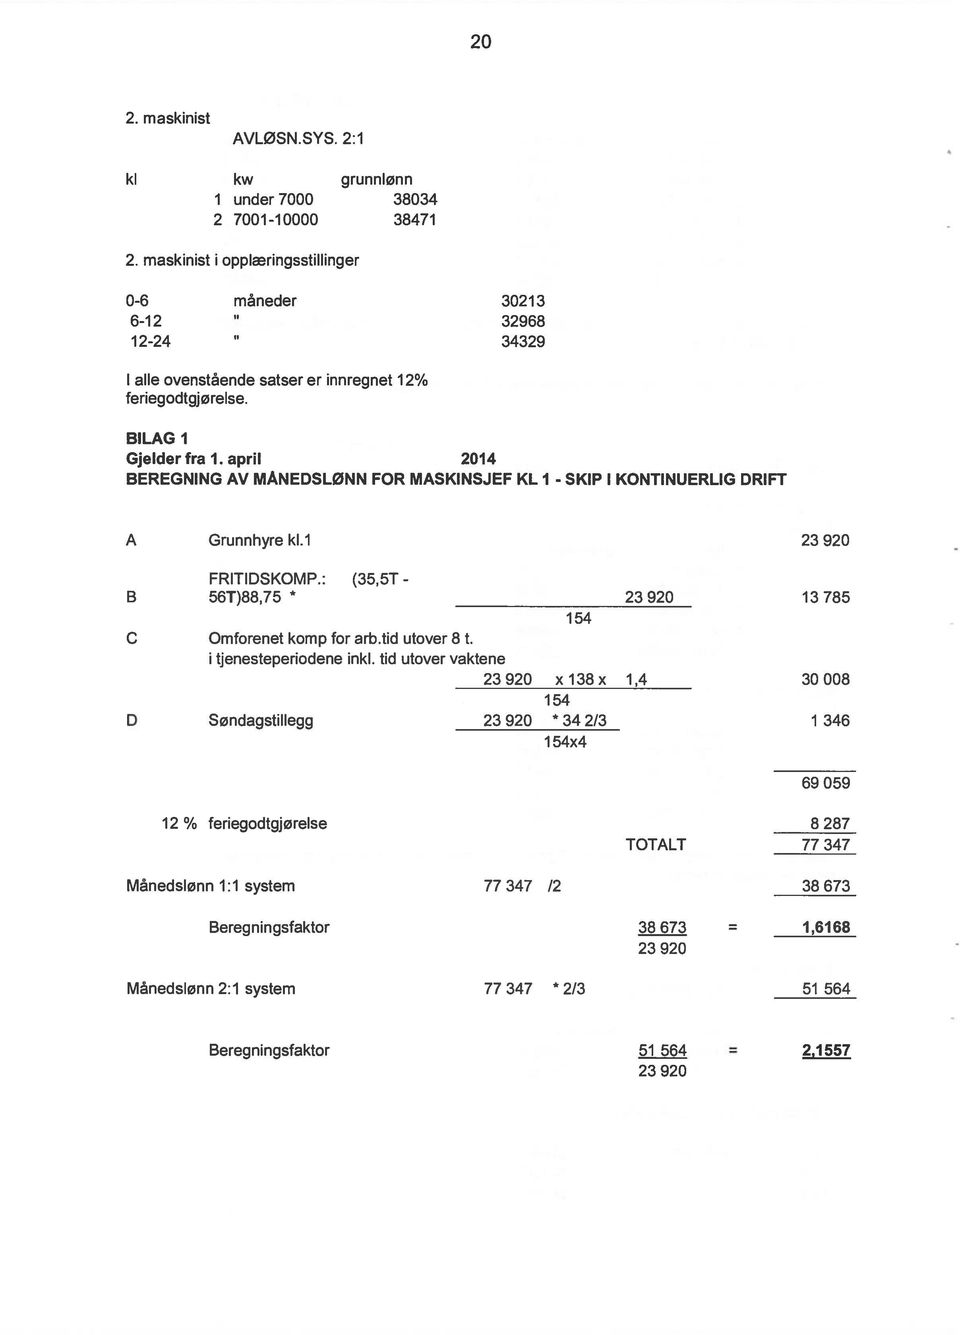 april 2014 BEREGNING AV MÅNEDSLØNN FOR MASKINSJEF KL I - SKIP I KONTINUERLIG DRIFT A Grunnhyrekl.1 23920 FRITIDSKOMP.: (35,5T - B 56T)88,75 * 23920 13785 154 C Omforenet komp for arb.